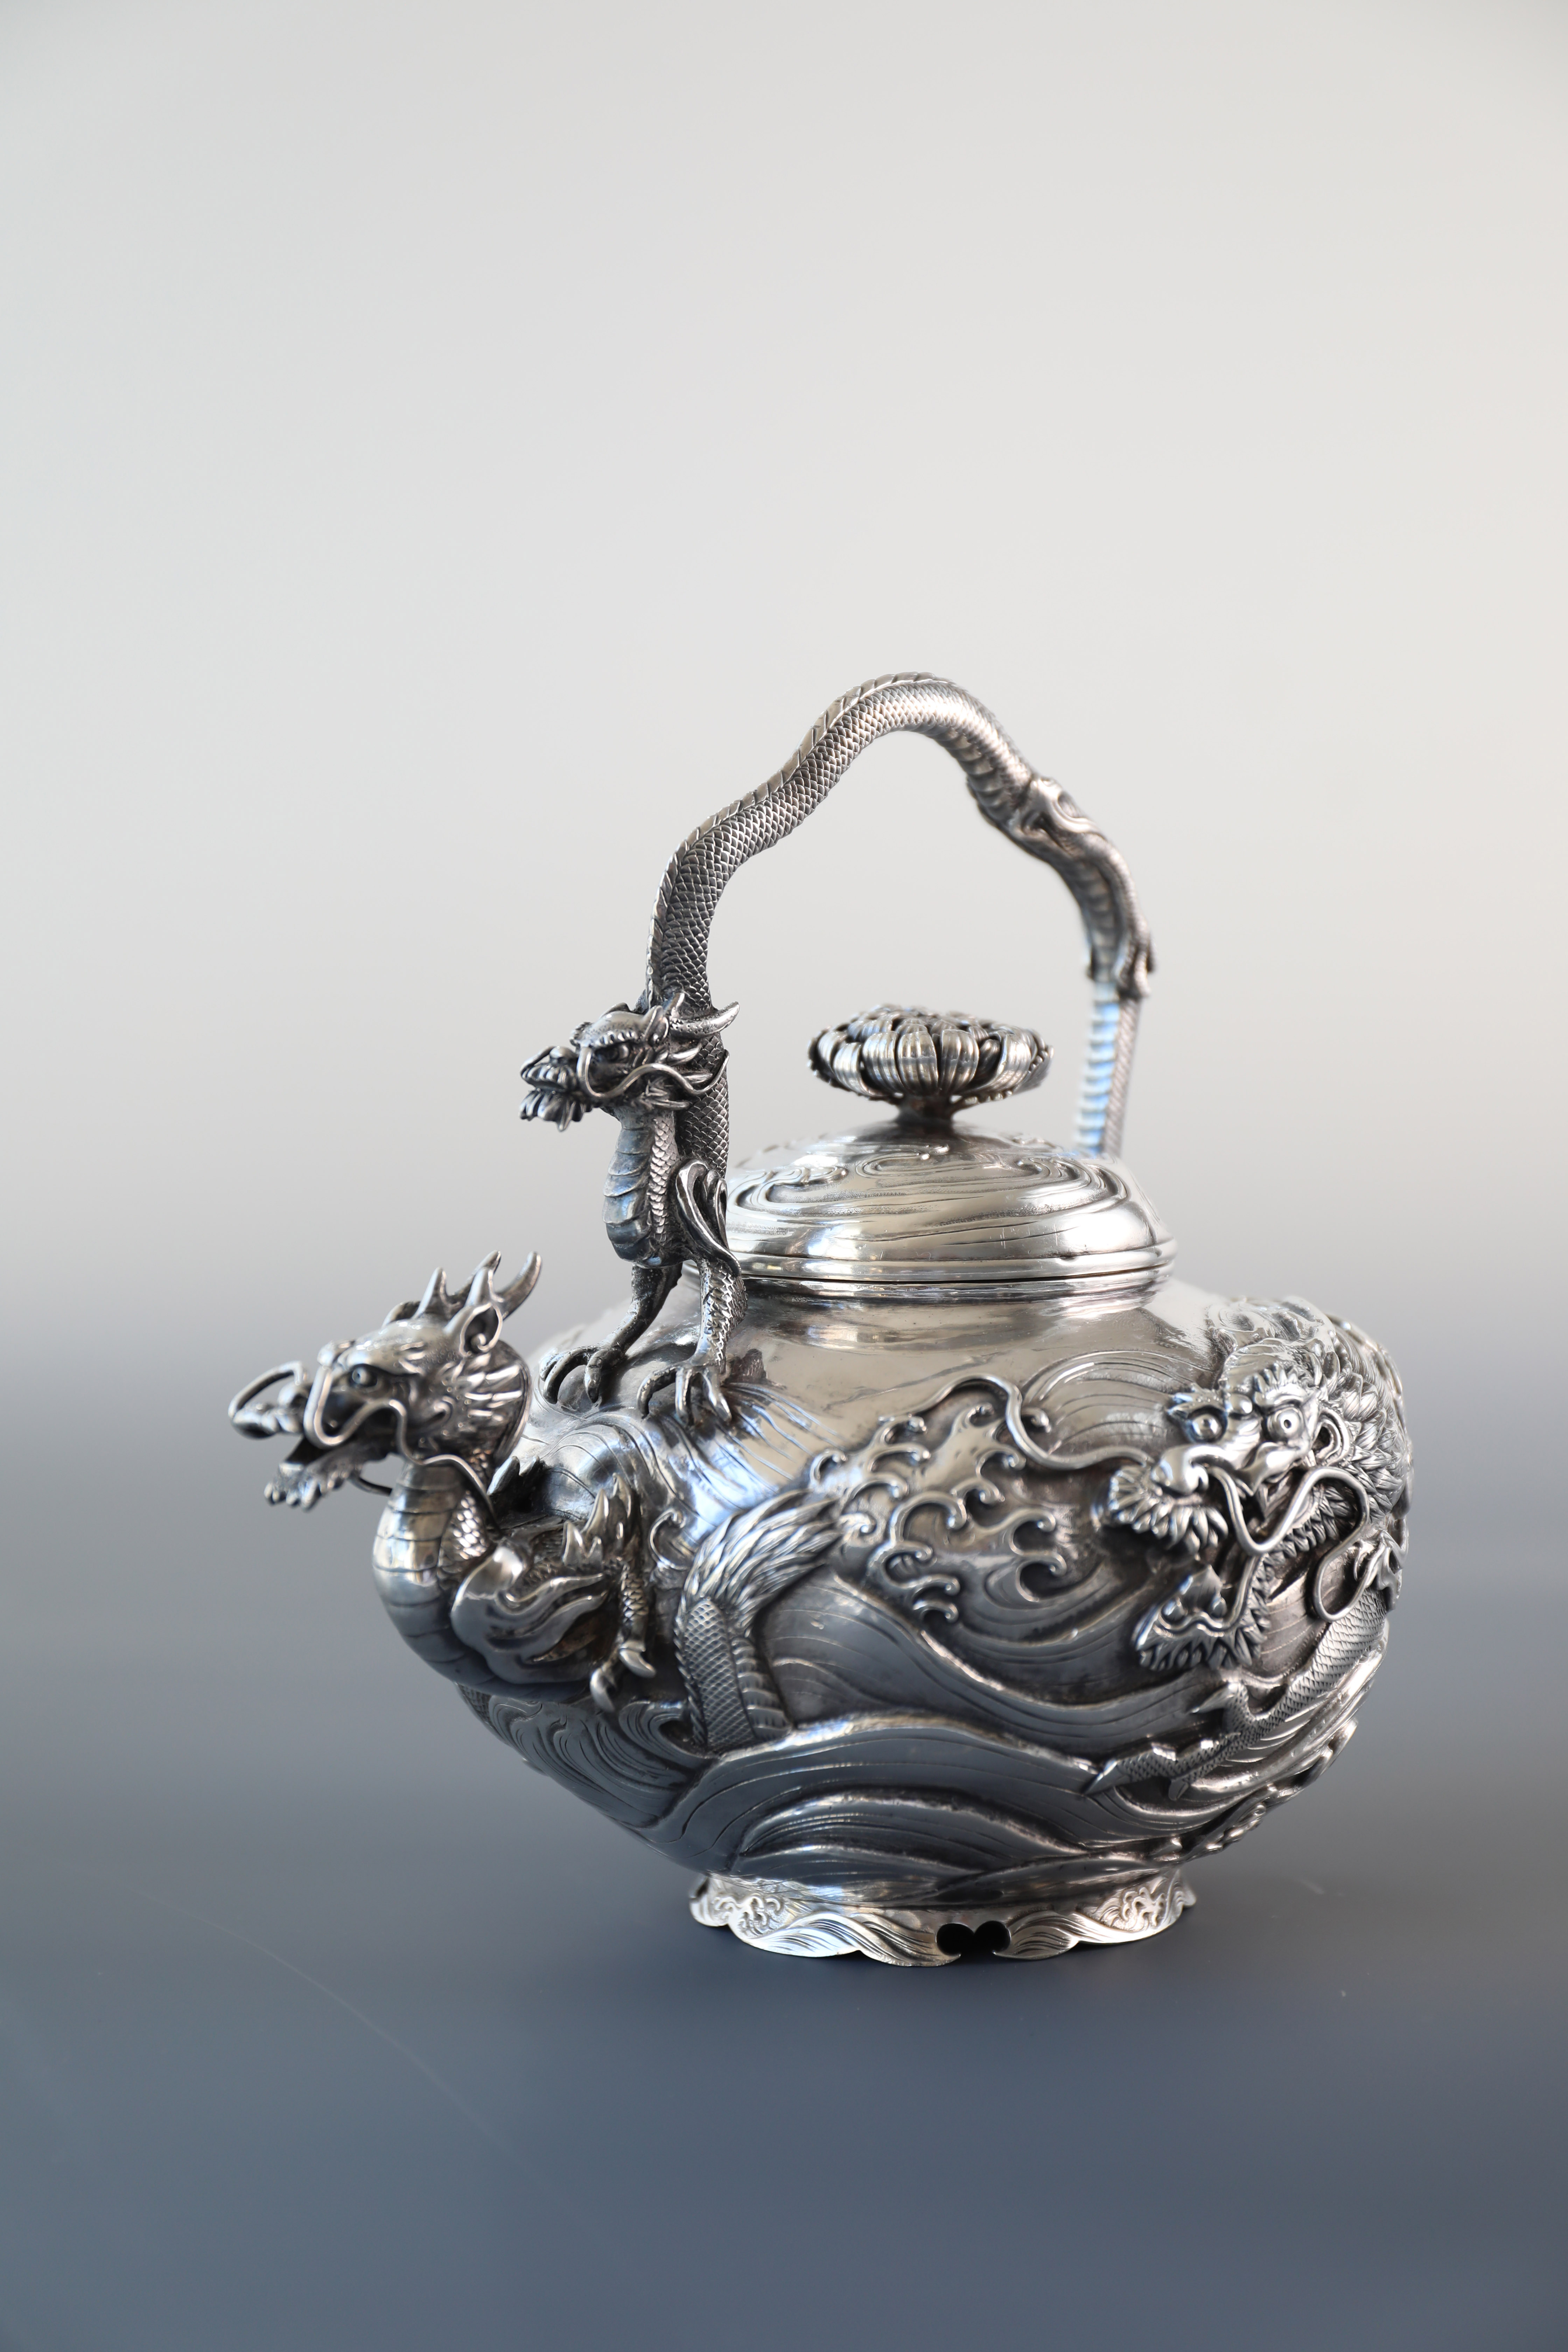 1890年日本良孝龙纹纯银茶壶/茶叶罐– 大雅堂非遗大雅堂司茶雅物